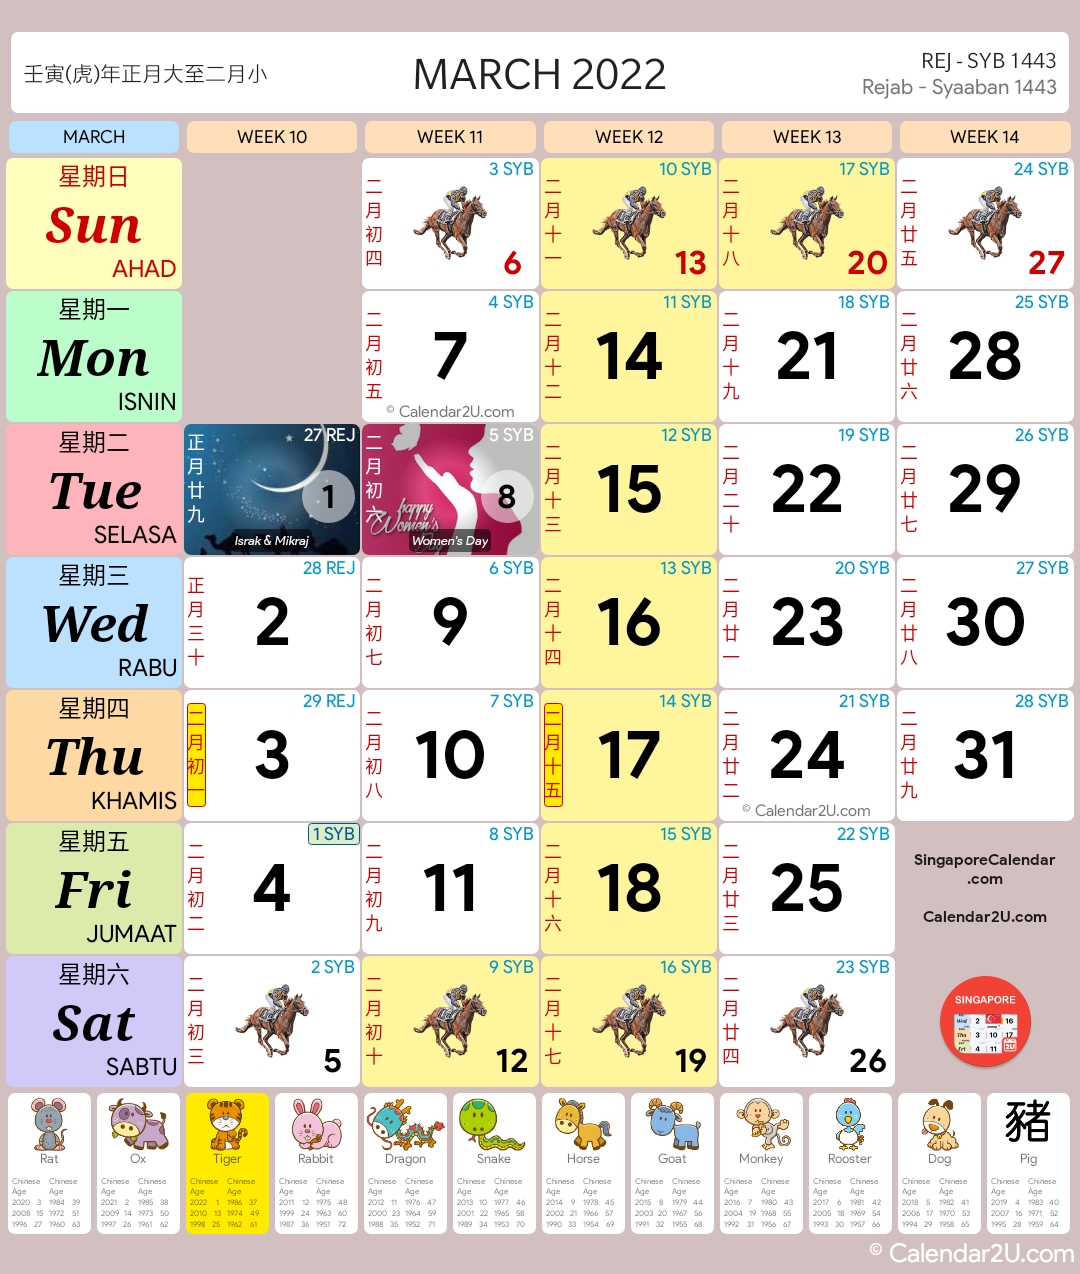 Singapore Calendar Mar 2022